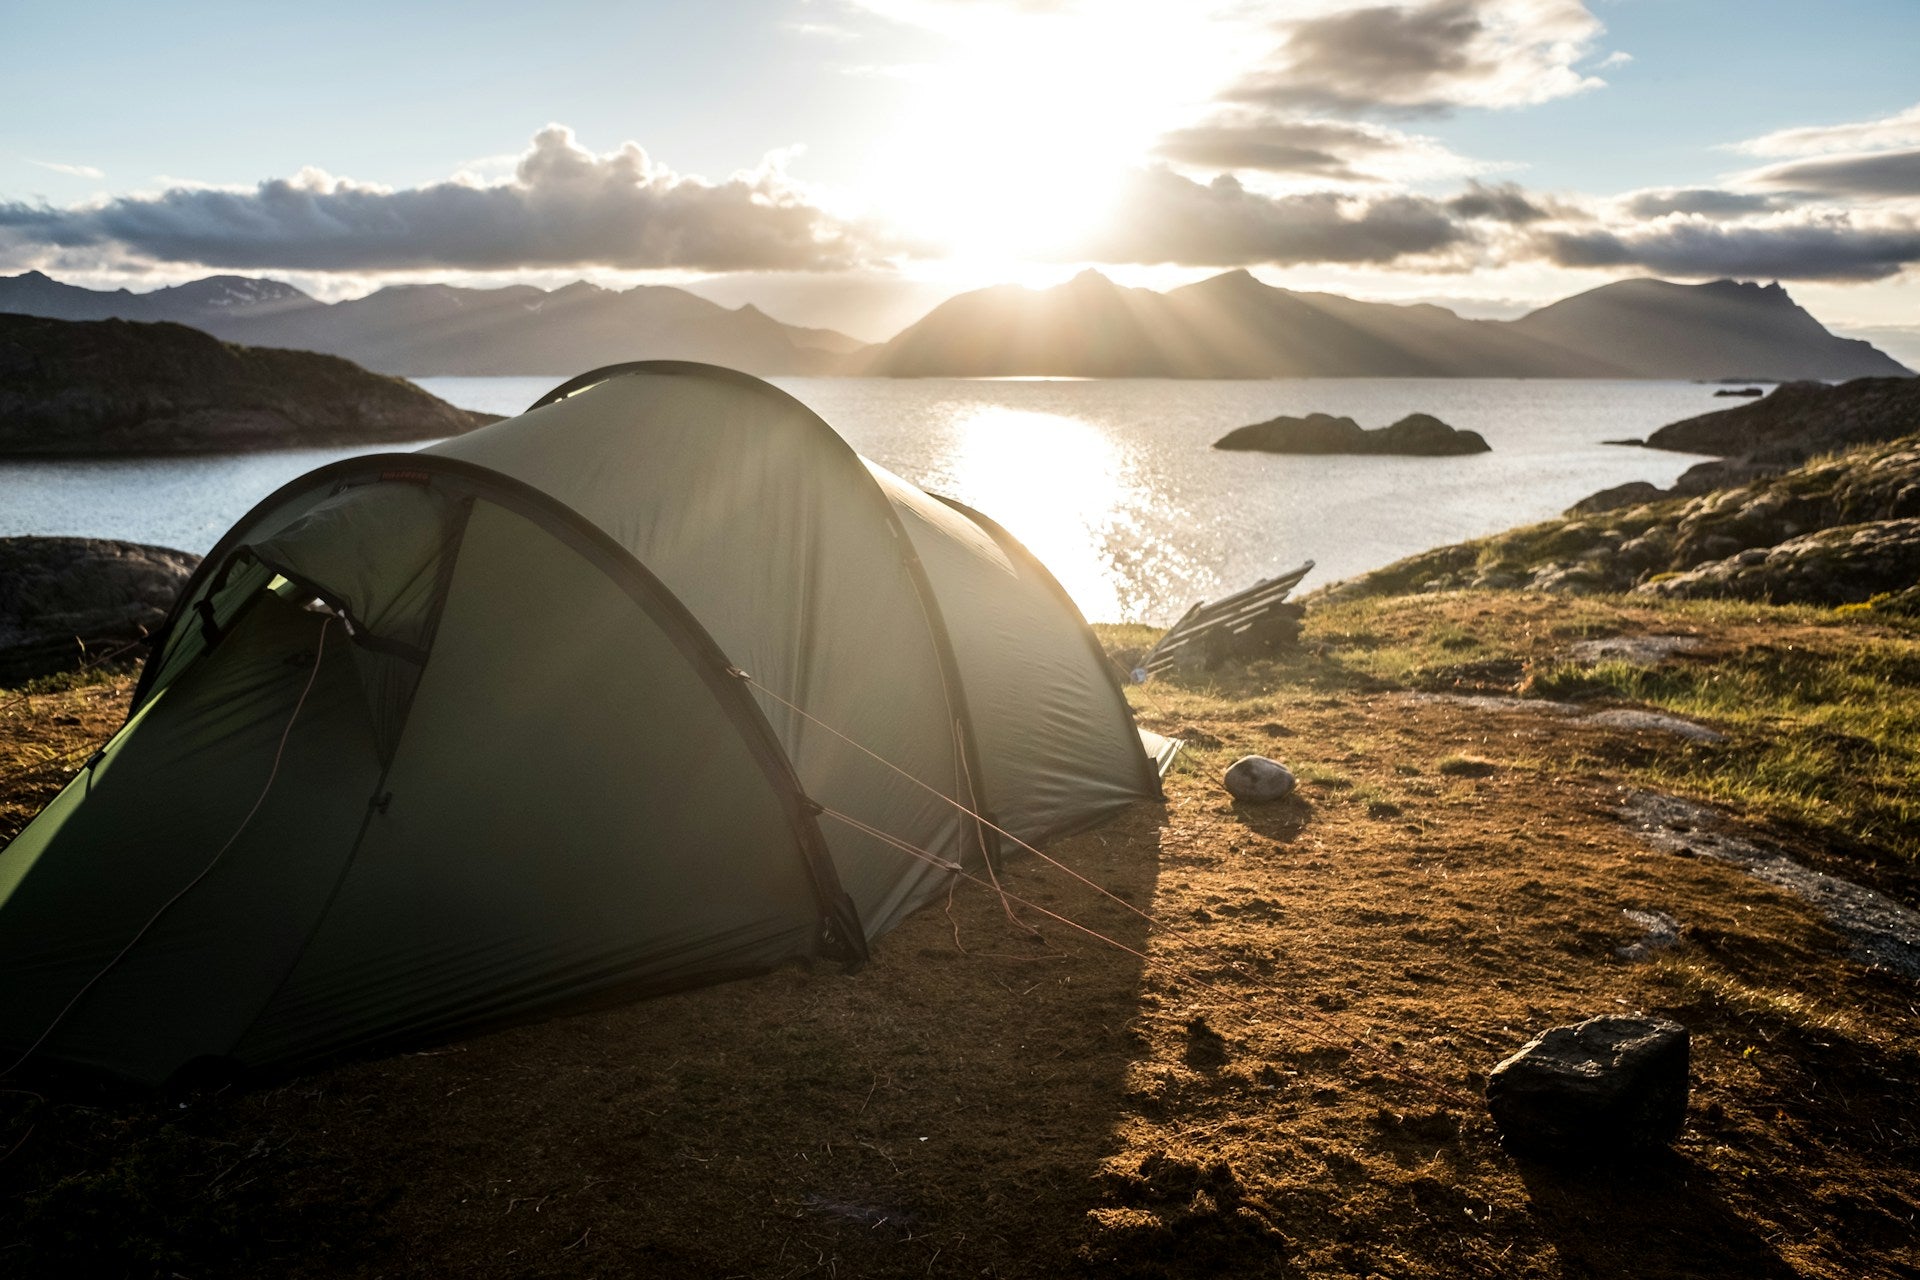 Tentes et abris : Camping et randonnée